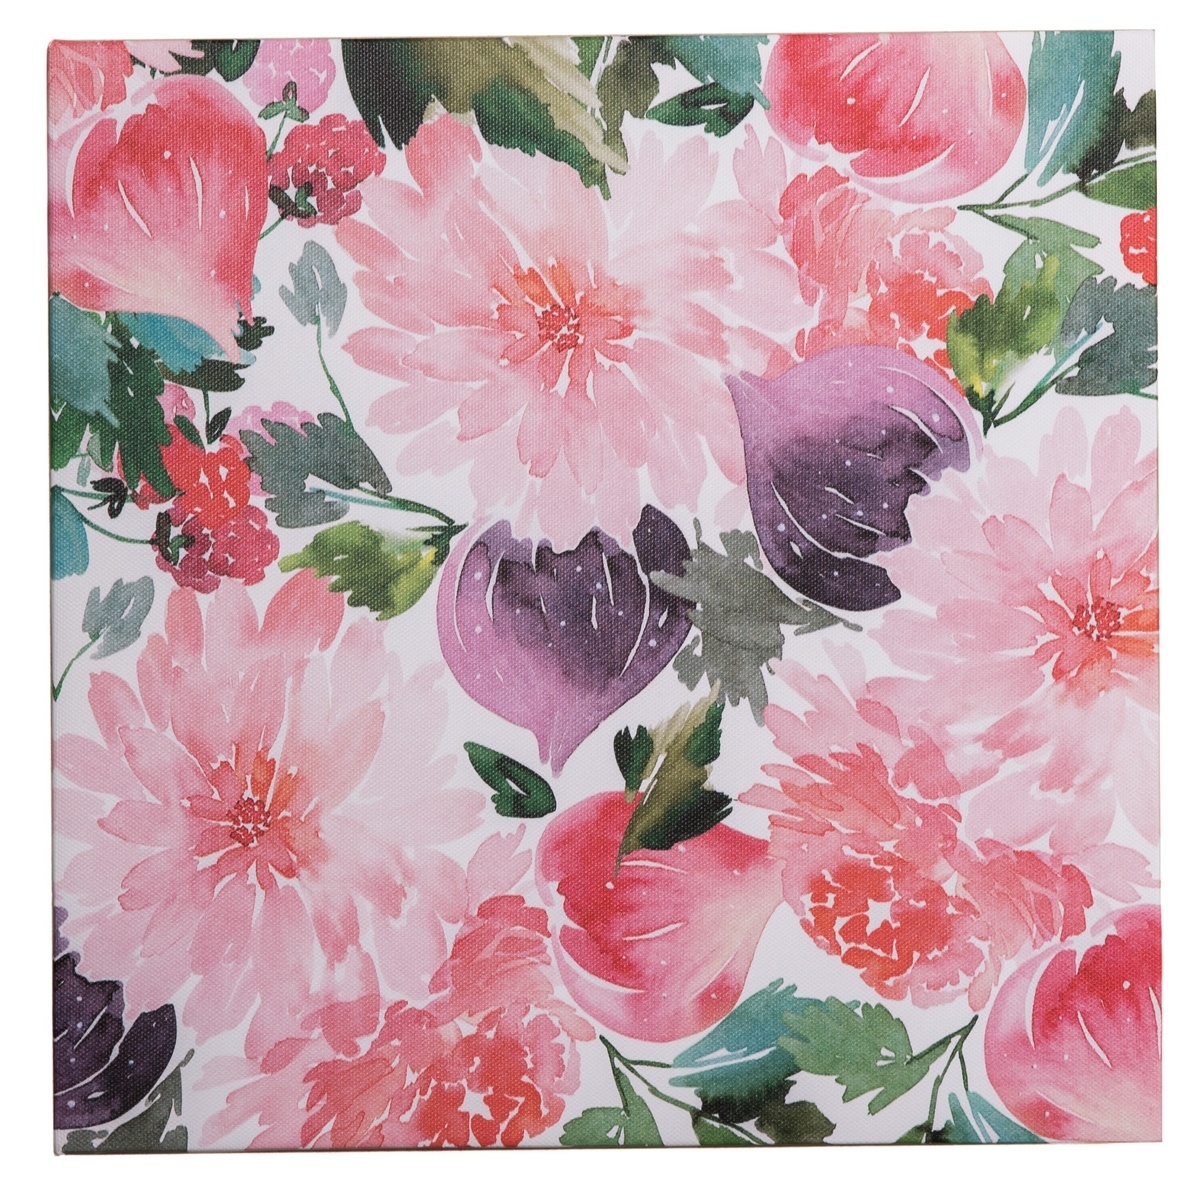 Flower garden vászonkép, 28 x 28 cm